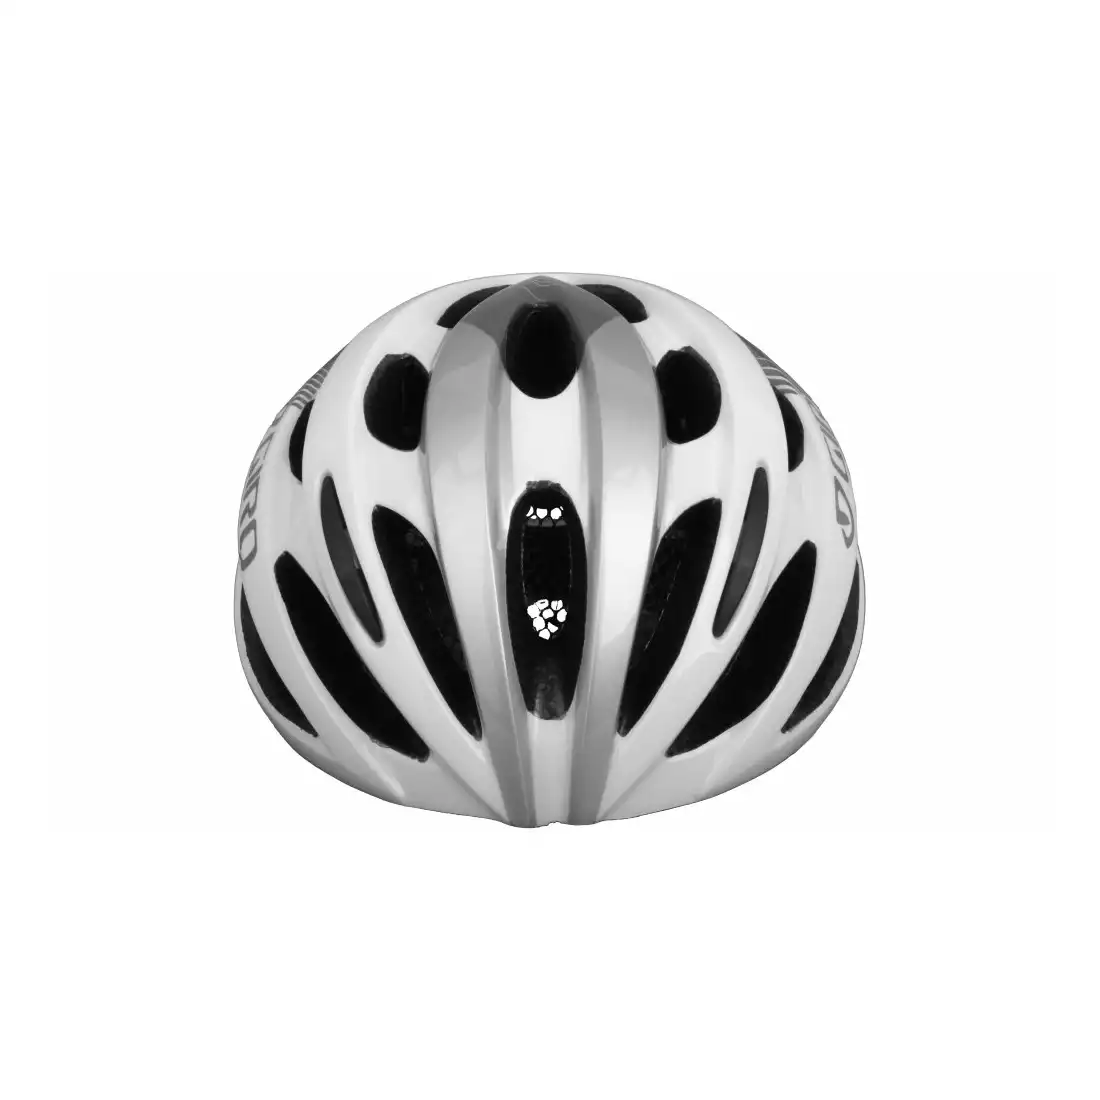 GIRO TRINITY kask rowerowy, biało-srebrny